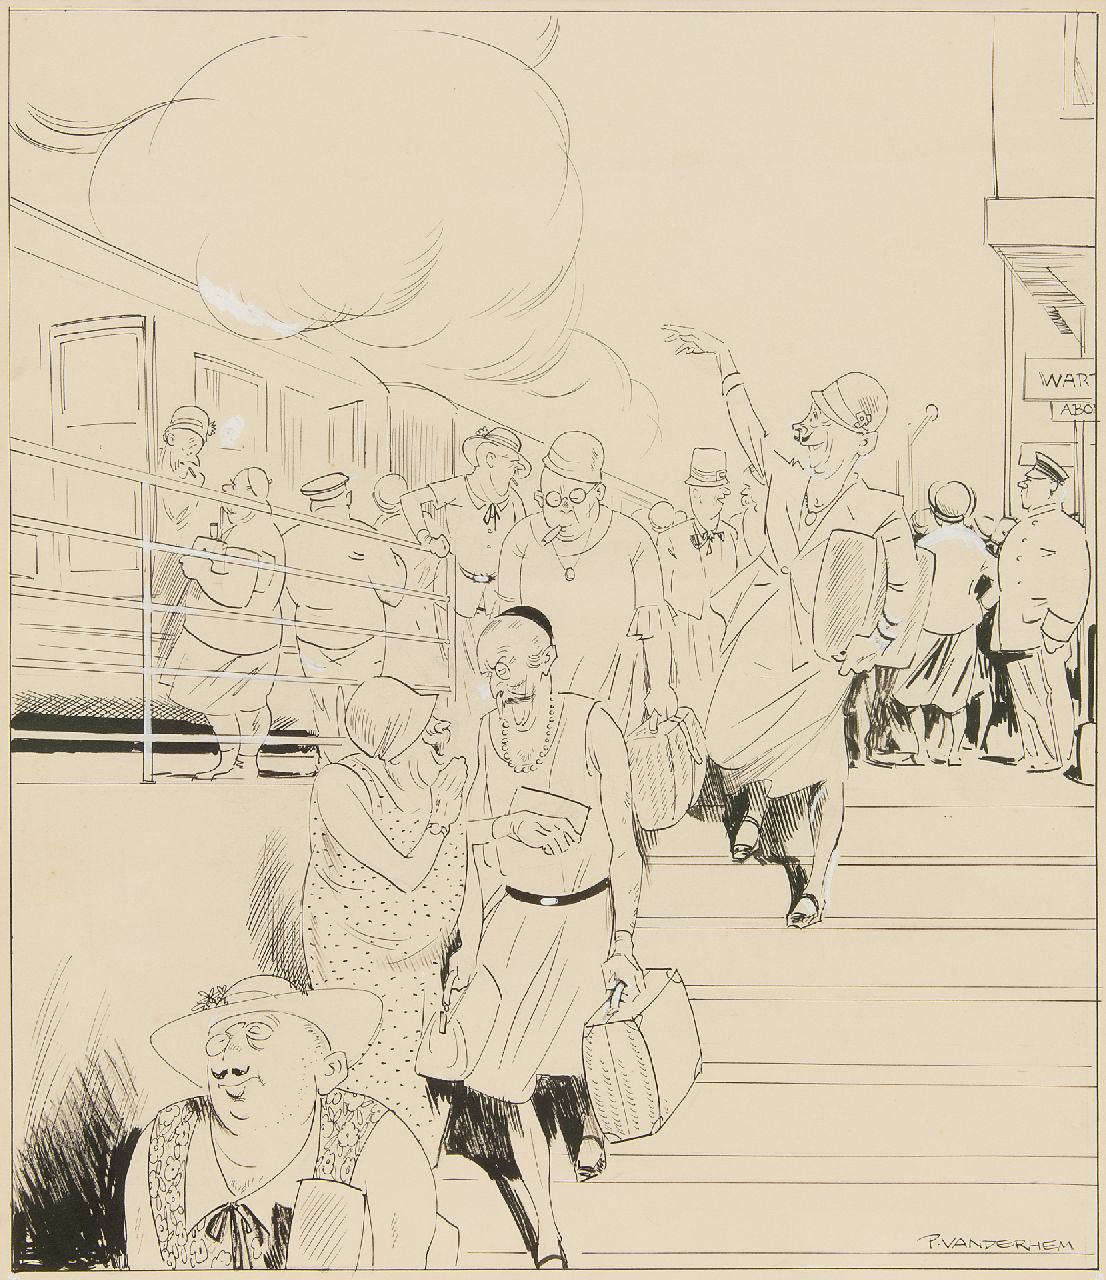 Hem P. van der | Pieter 'Piet' van der Hem | Aquarellen en tekeningen te koop aangeboden | Zomerdrukte op het station, inkt en aquarel op papier 49,8 x 35,0 cm, gesigneerd rechtsonder